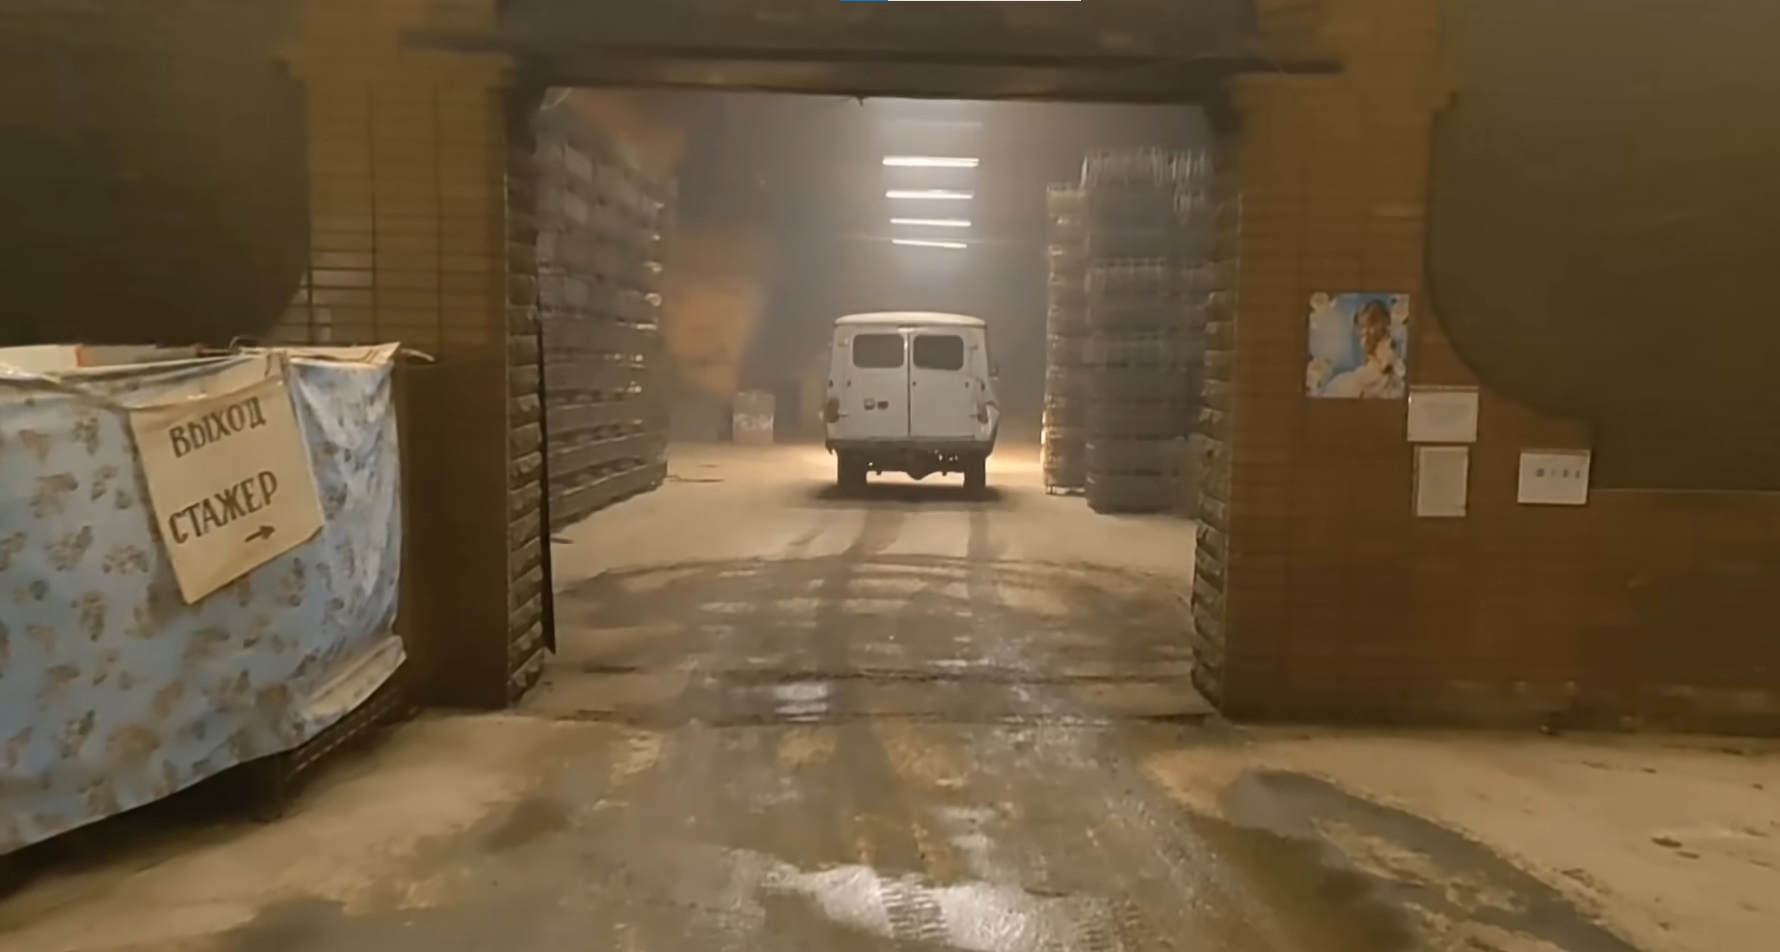 Российские наемники вероятно устроили военную базу в подземных помещениях бахмутского Artwinery 2